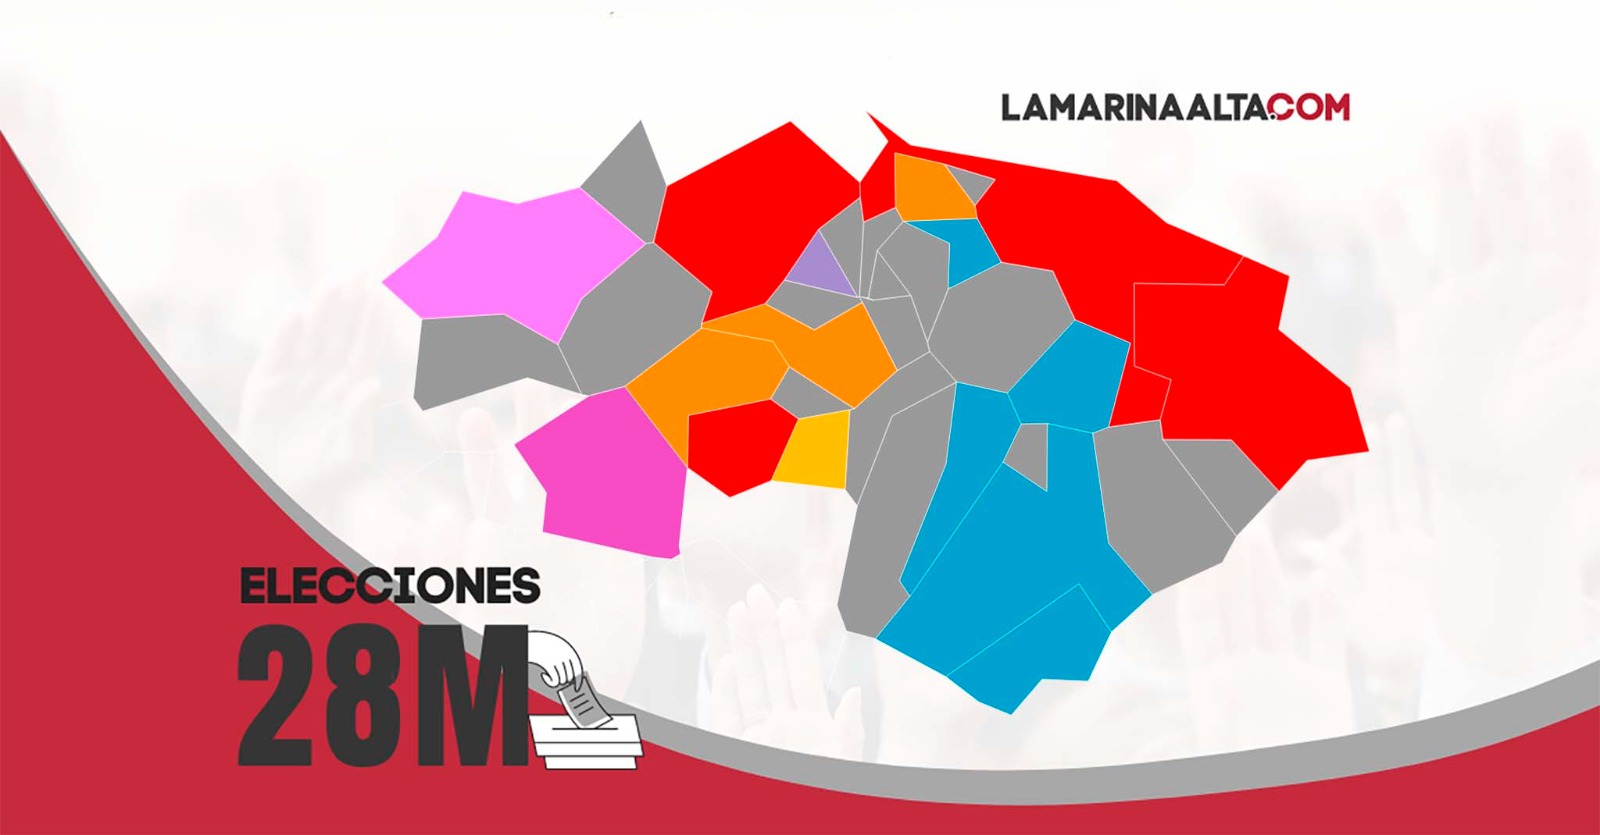 mapa elecciones